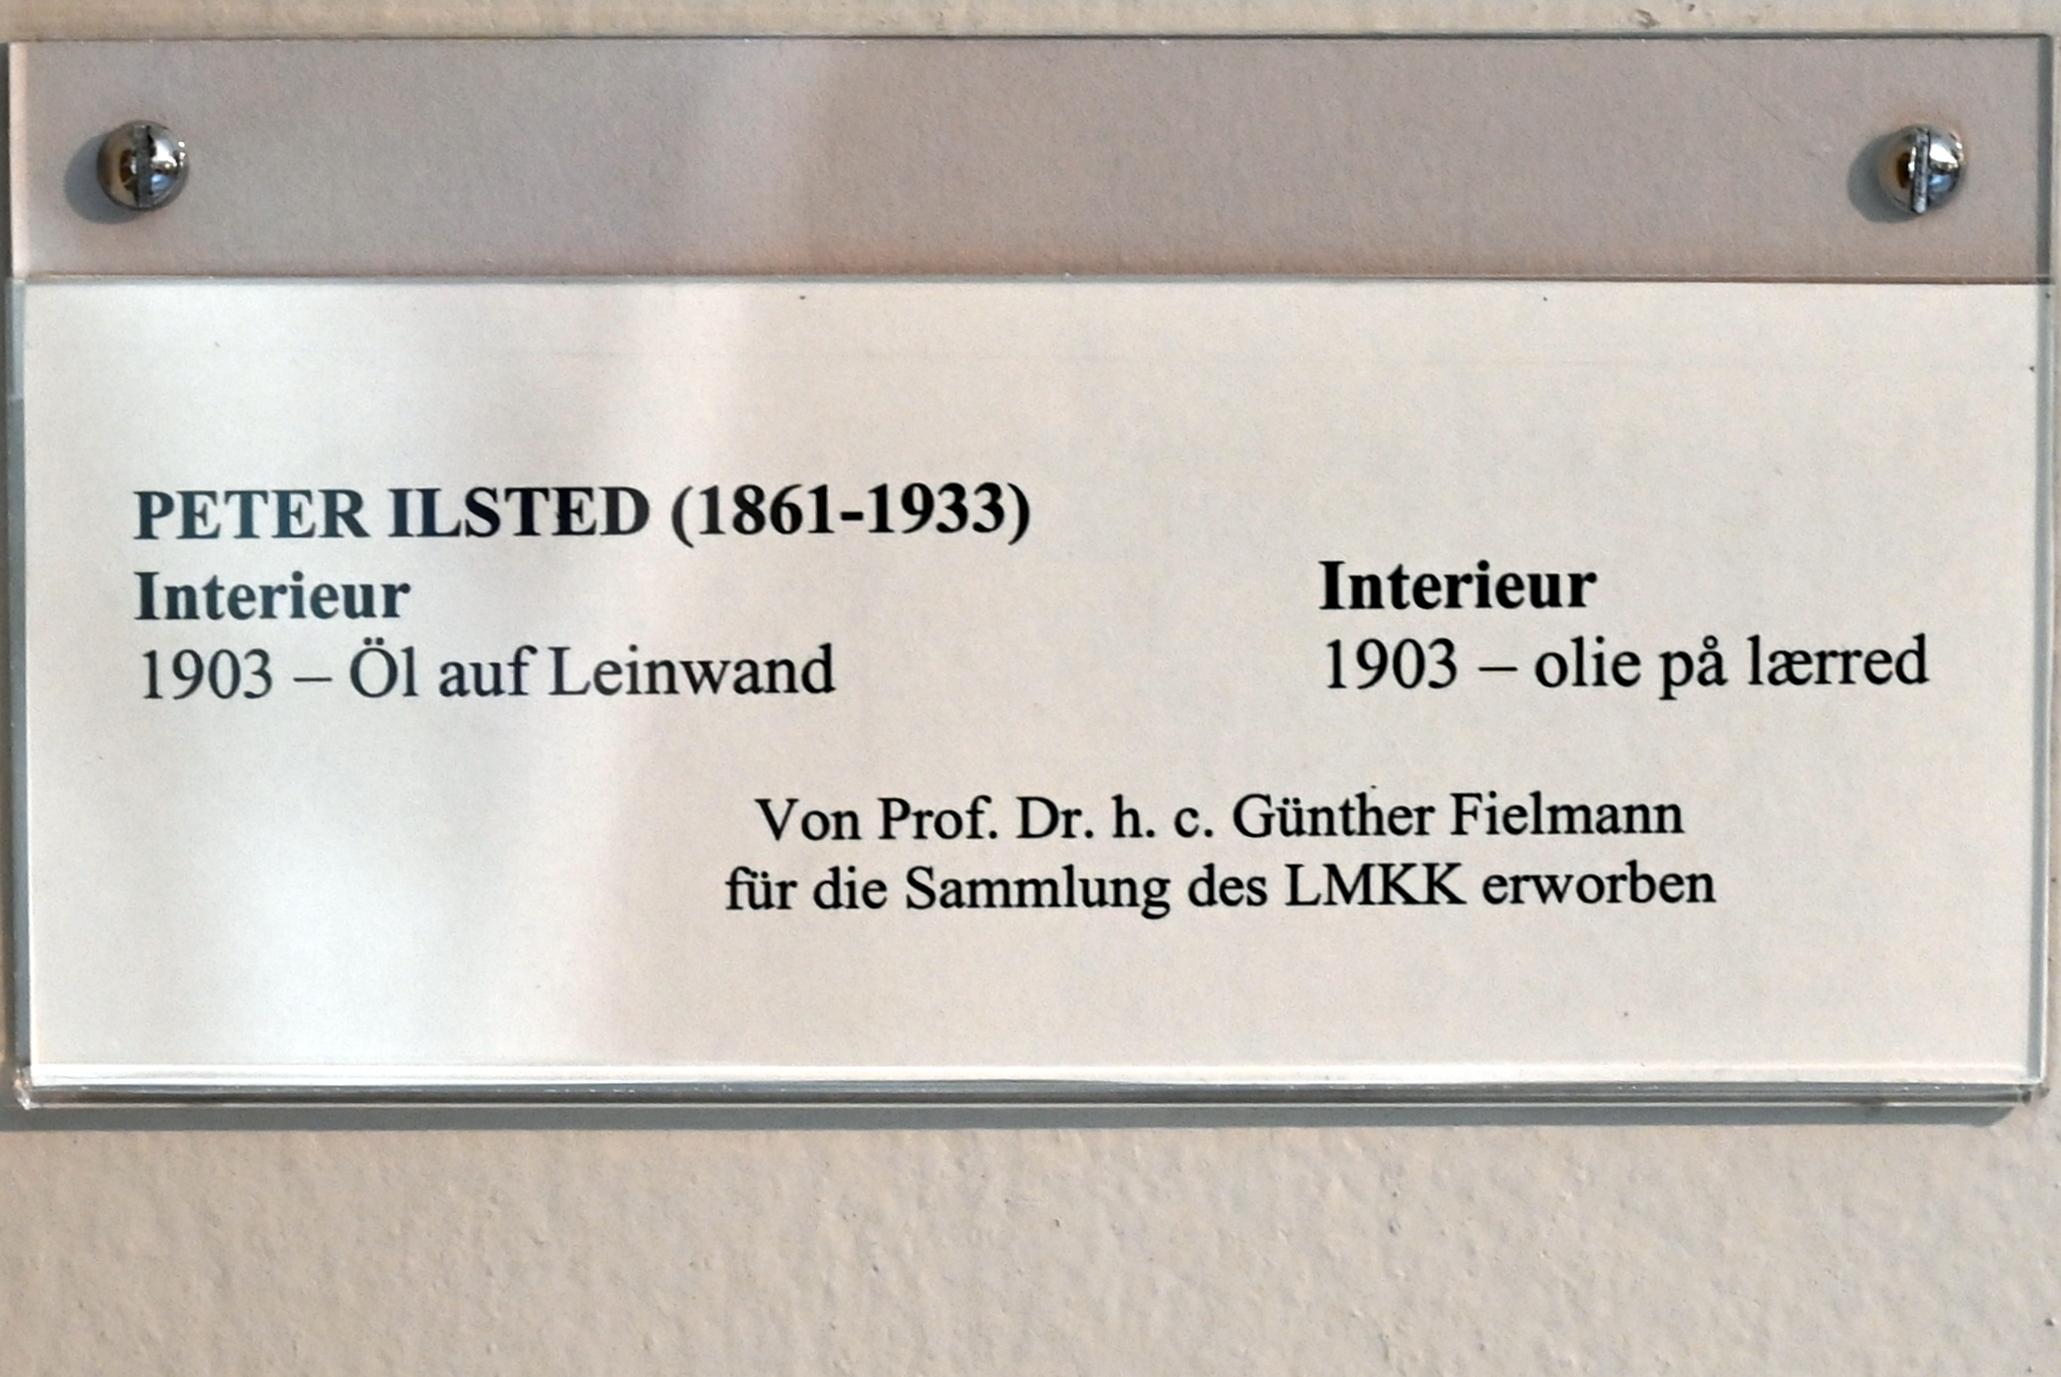 Peter Ilsted (1903–1906), Interieur, Schleswig, Landesmuseum für Kunst und Kulturgeschichte, Jugendstil, 1903, Bild 2/2